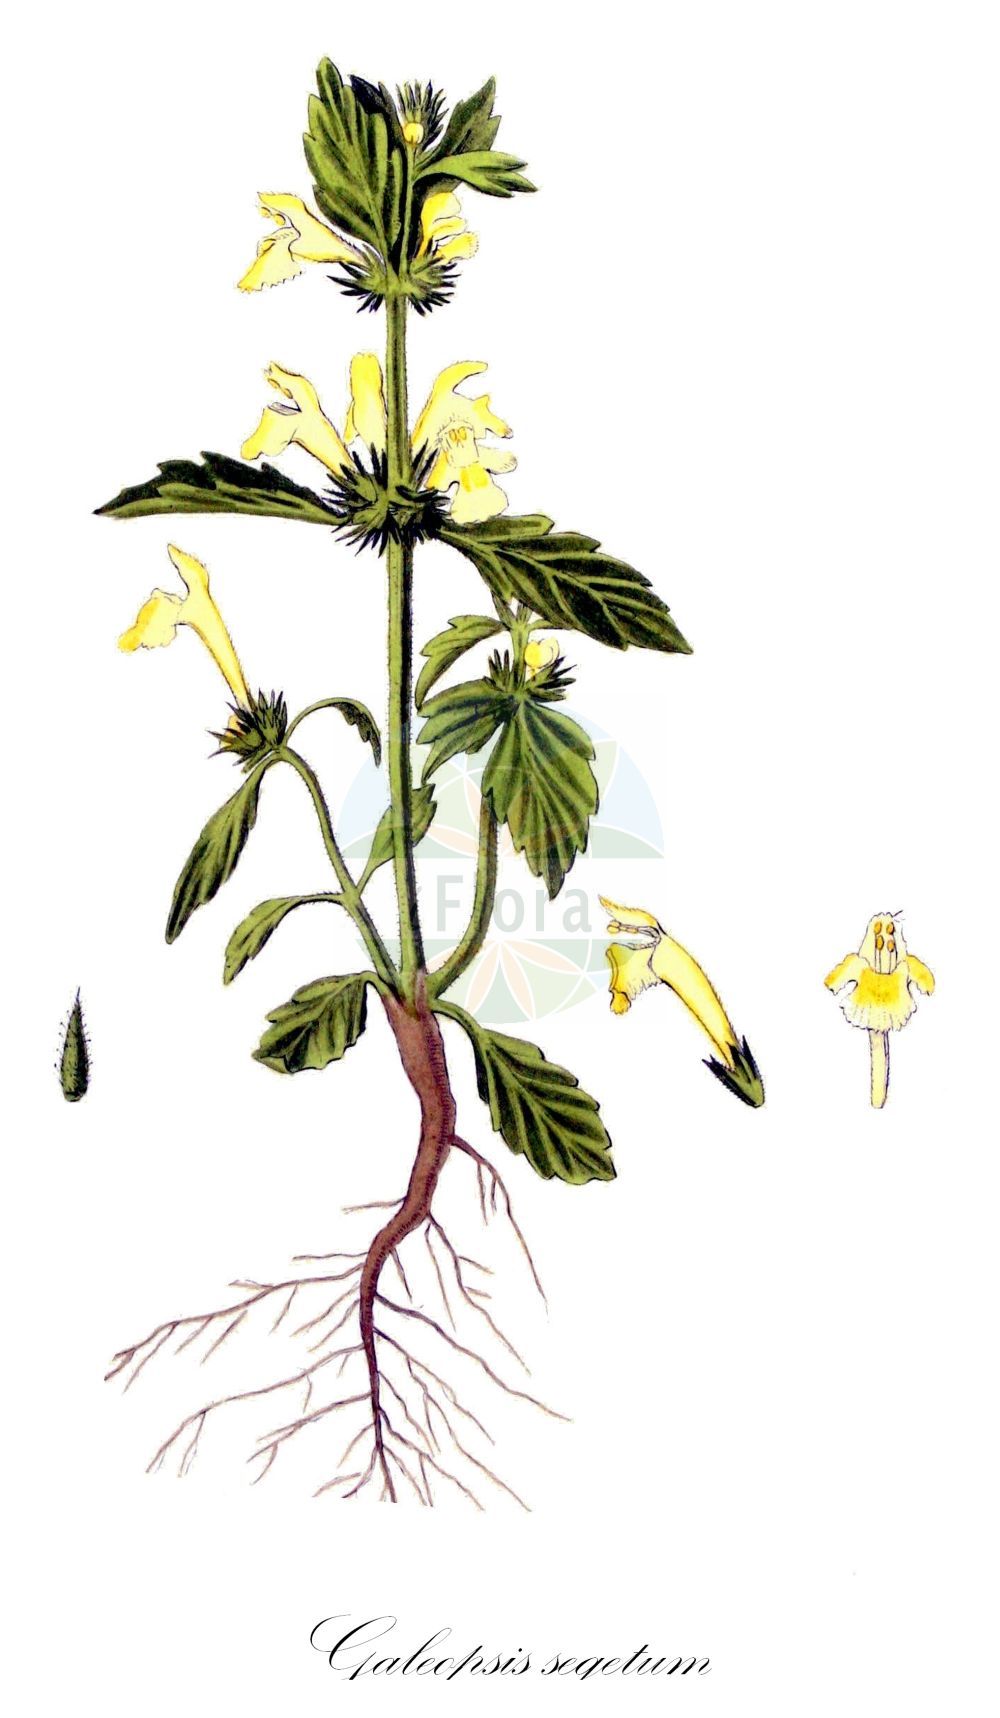 Historische Abbildung von Galeopsis segetum (Gelber Hohlzahn - Downy Hemp-nettle). Das Bild zeigt Blatt, Bluete, Frucht und Same. ---- Historical Drawing of Galeopsis segetum (Gelber Hohlzahn - Downy Hemp-nettle). The image is showing leaf, flower, fruit and seed.(Galeopsis segetum,Gelber Hohlzahn,Downy Hemp-nettle,Dalanum segetum,Galeopsis dubia,Galeopsis elegans,Galeopsis grandiflora,Galeopsis ochroleuca,Galeopsis segetum,Galeopsis villosa,Ladanella segetum,Ladanum dubium,Ladanum luteum,Ladanum ochroleucum,Tetrahit longiflorum,Gelber Hohlzahn,Saat-Hohlzahn,Downy Hemp-nettle,Yellow Hemp-nettle,Galeopsis,Hohlzahn,Hempnettle,Lamiaceae,Lippenblütengewächse,Nettle family,Blatt,Bluete,Frucht,Same,leaf,flower,fruit,seed,Kops (1800-1934))